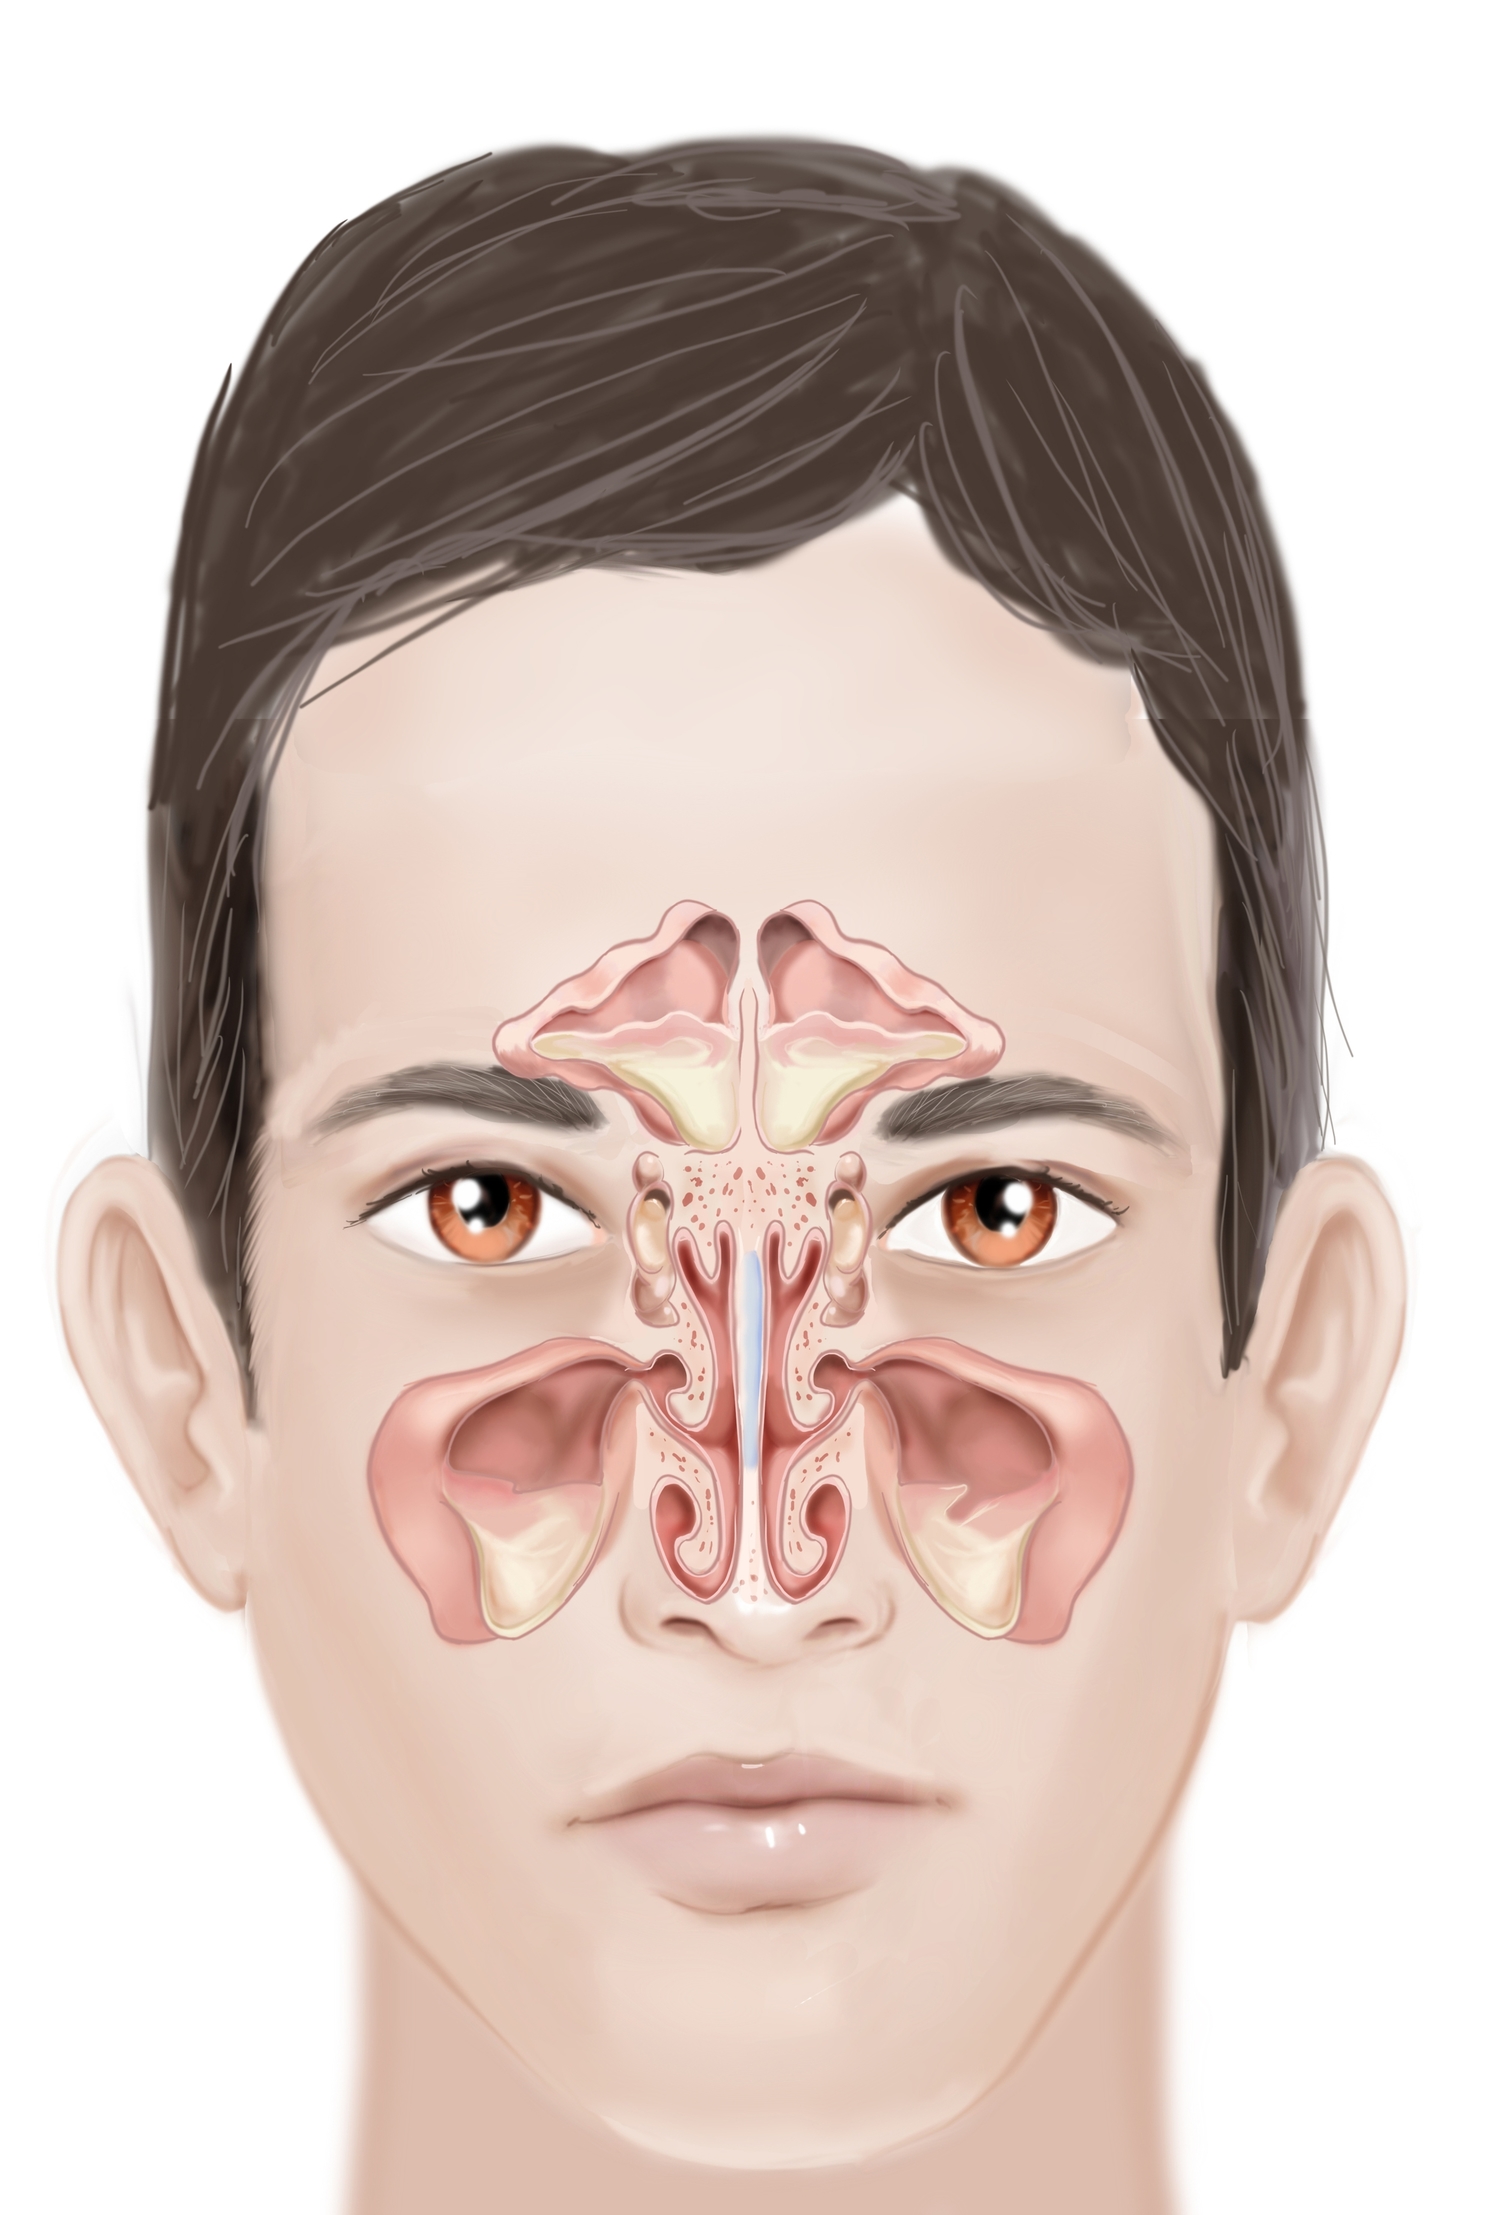 Sinusitis — Calgary Sinus Centre